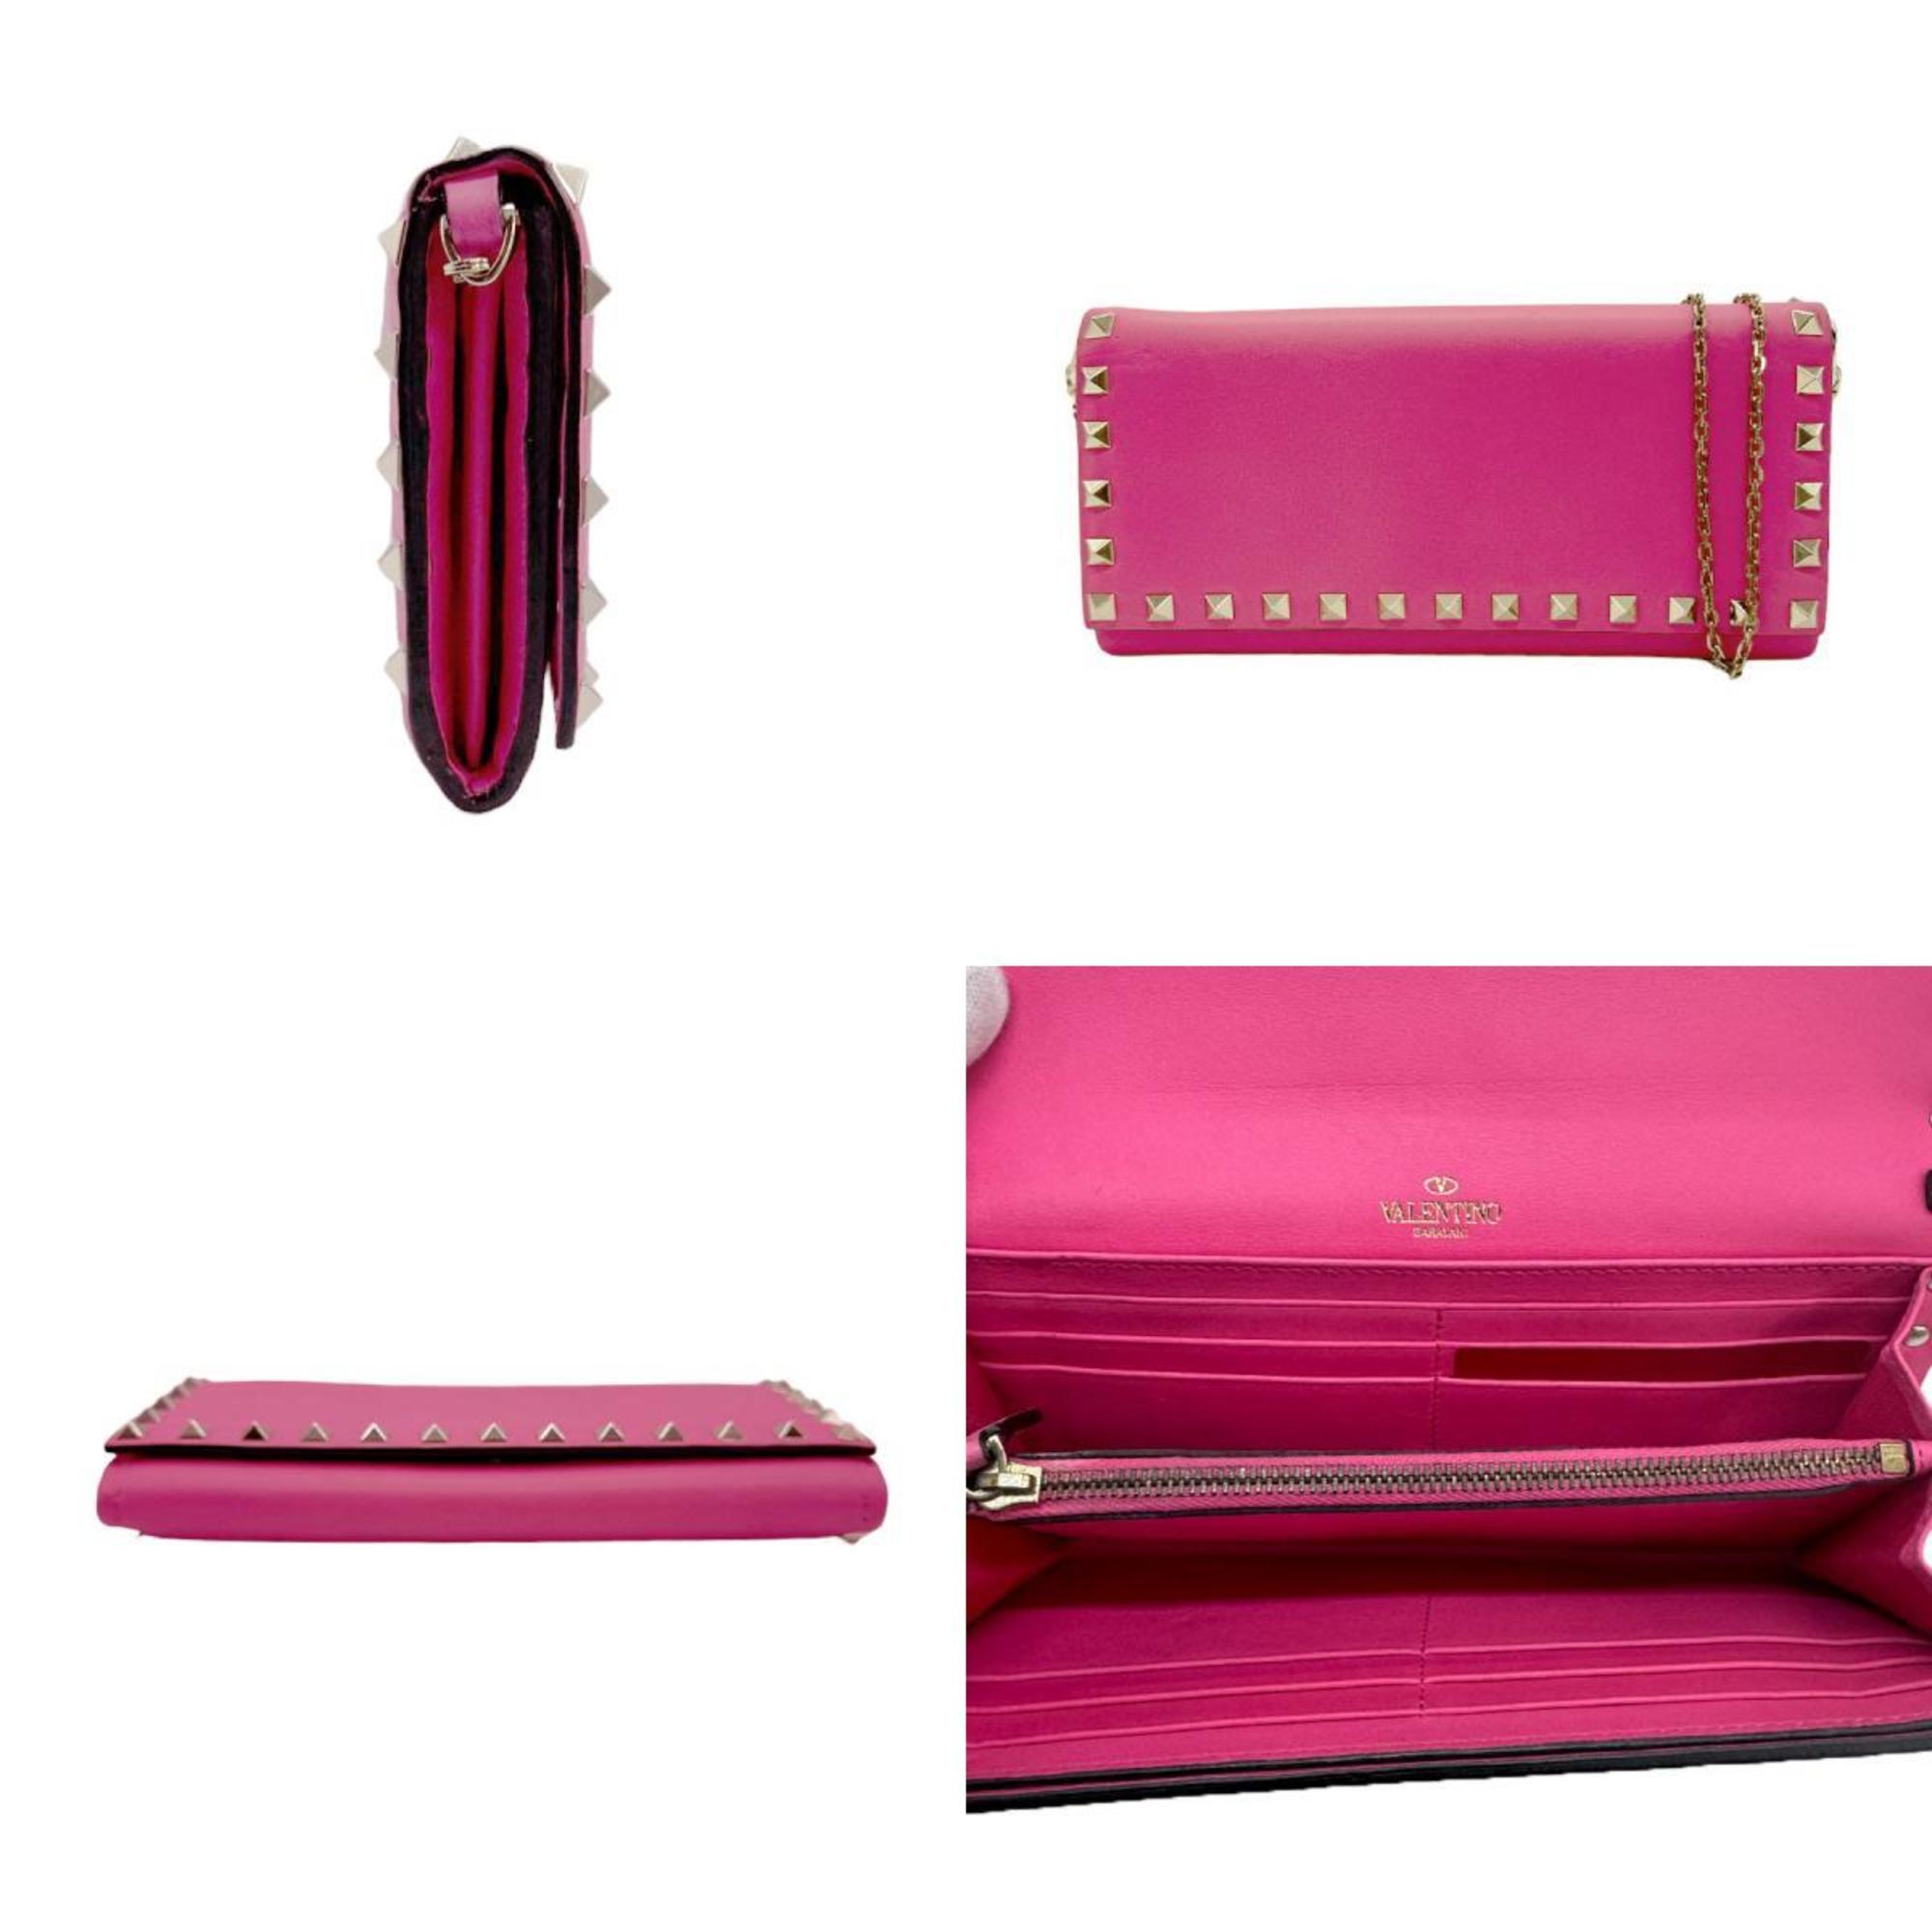 Valentino Garavani Chain Wallet Leather Pink Women's z0735